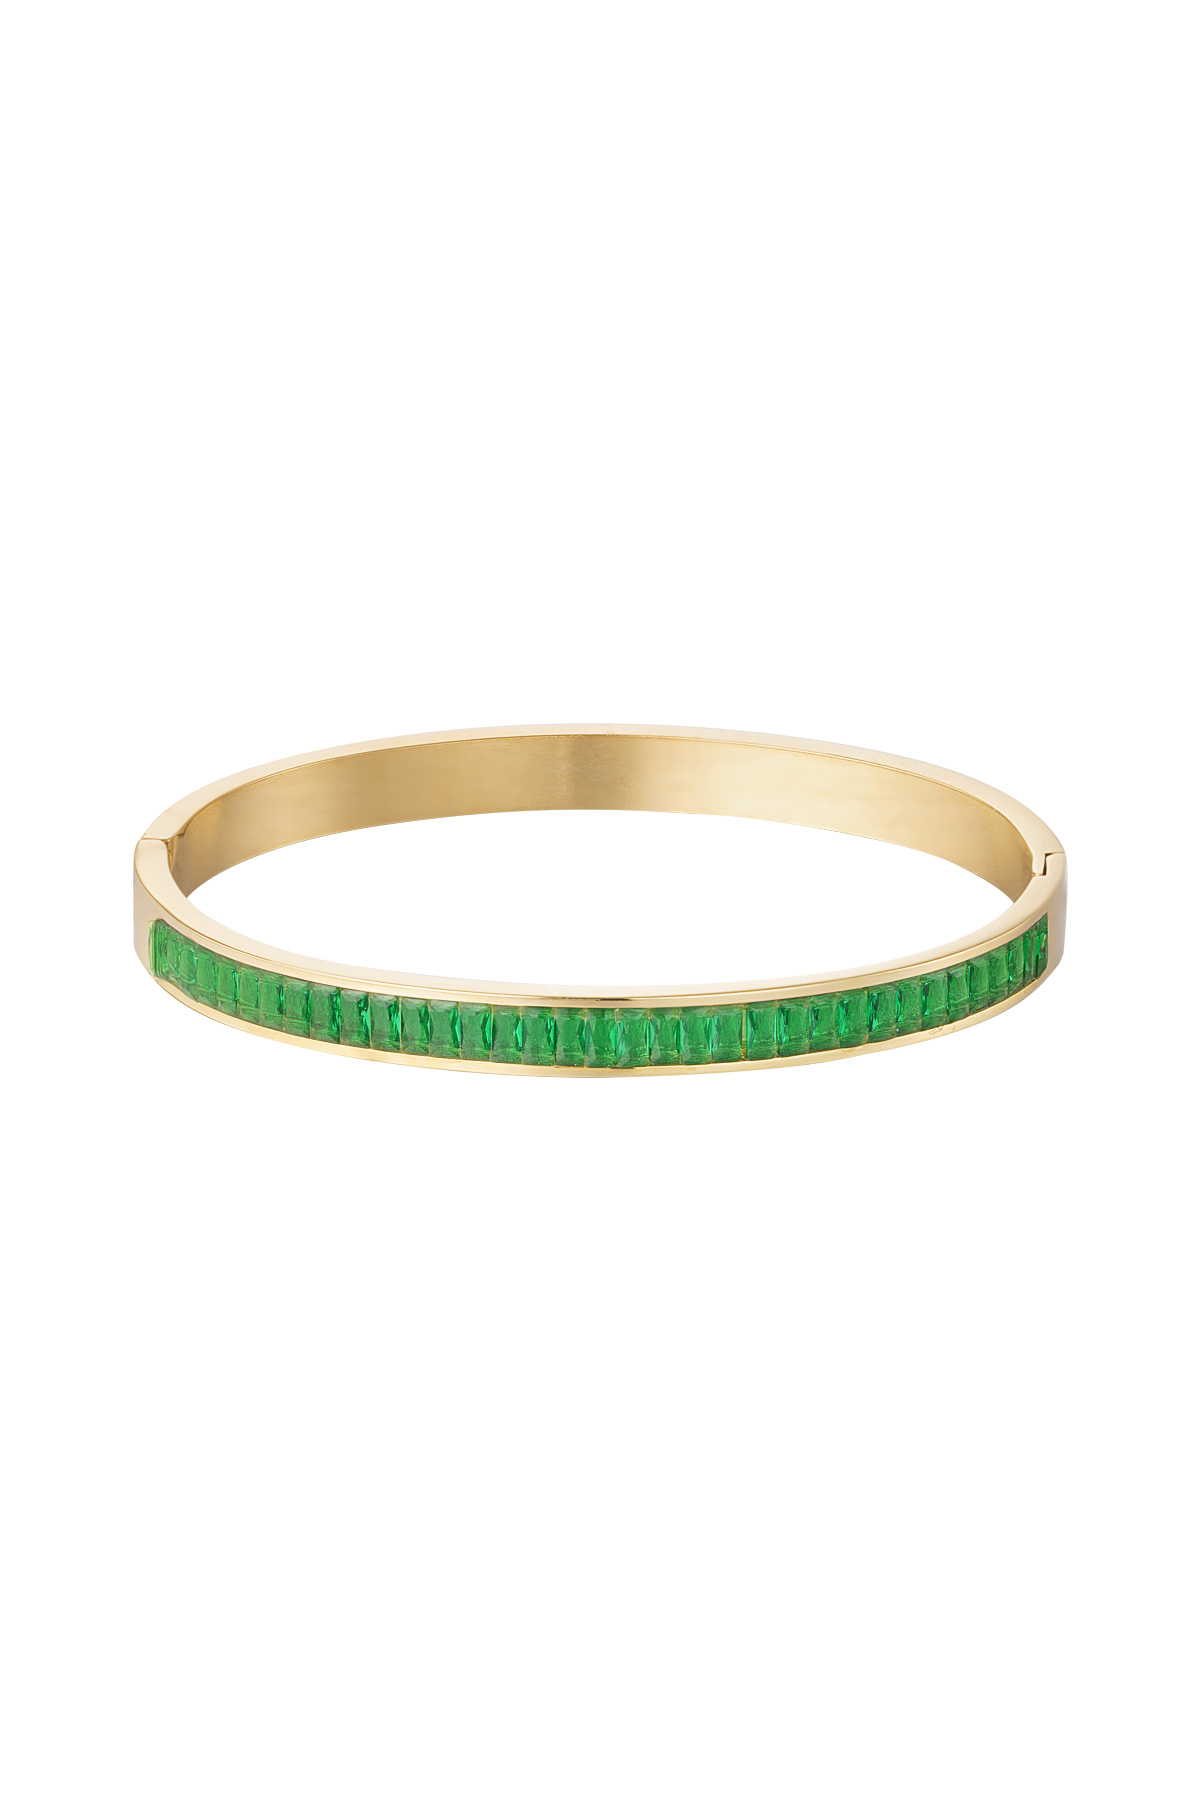 Slave bracelet stones - green